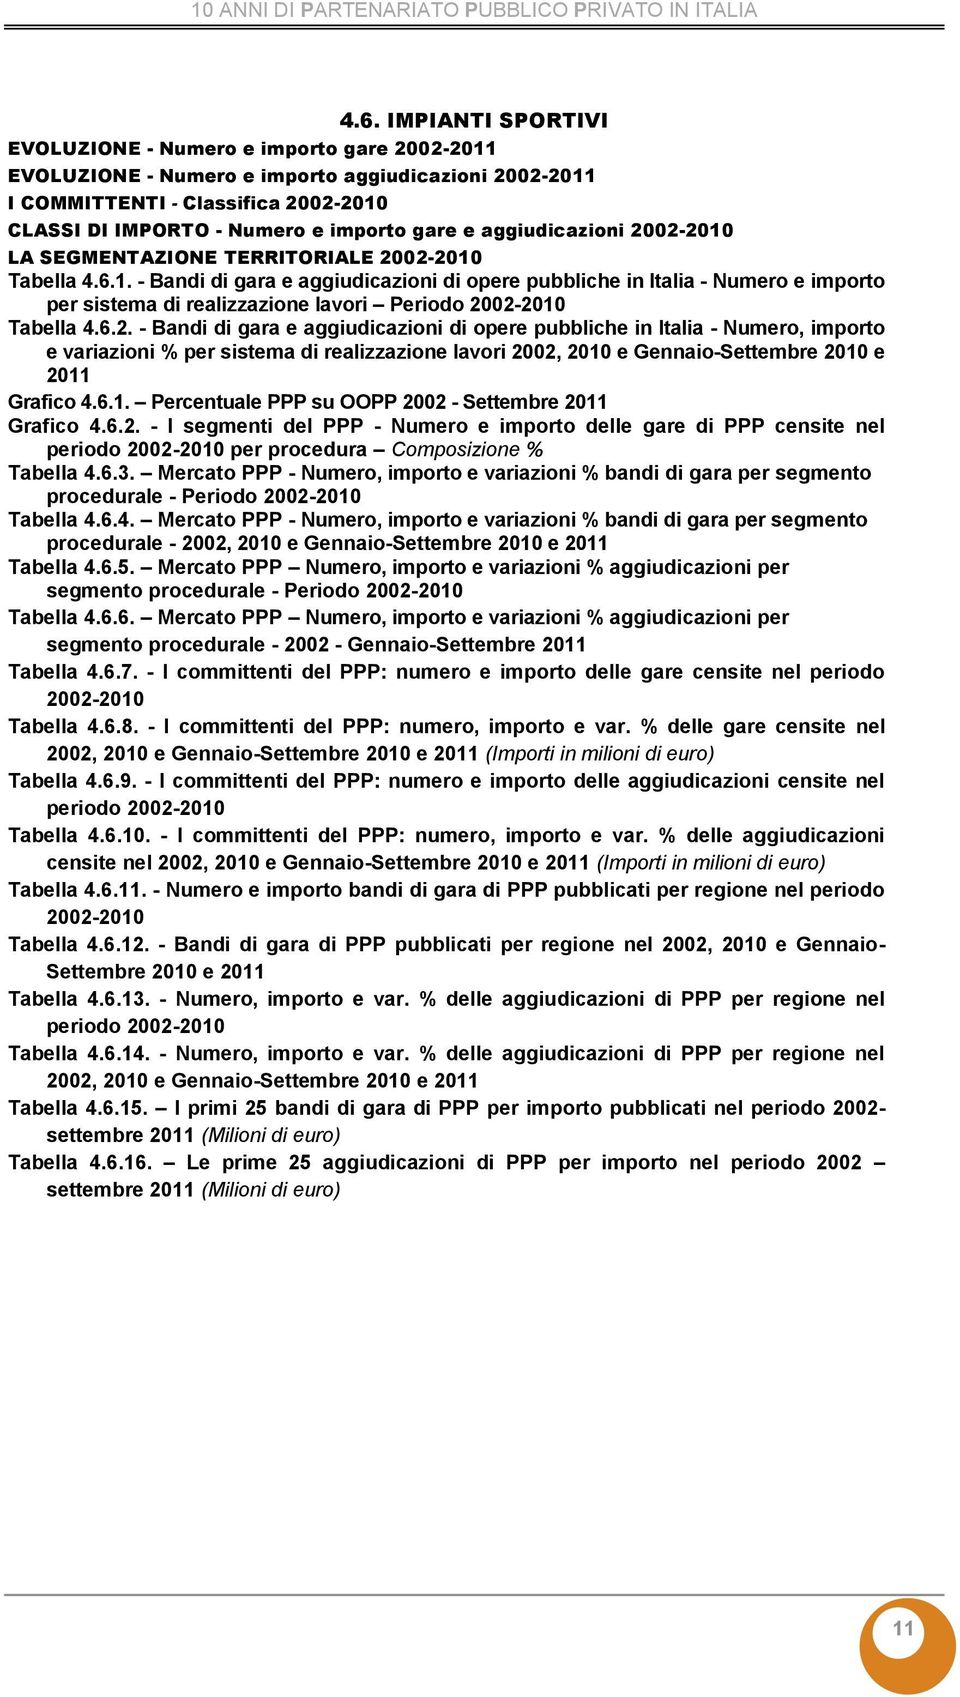 - Bandi di gara e aggiudicazioni di opere pubbliche in Italia - Numero, importo Grafico 4.6.1. Percentuale PPP su OOPP 20